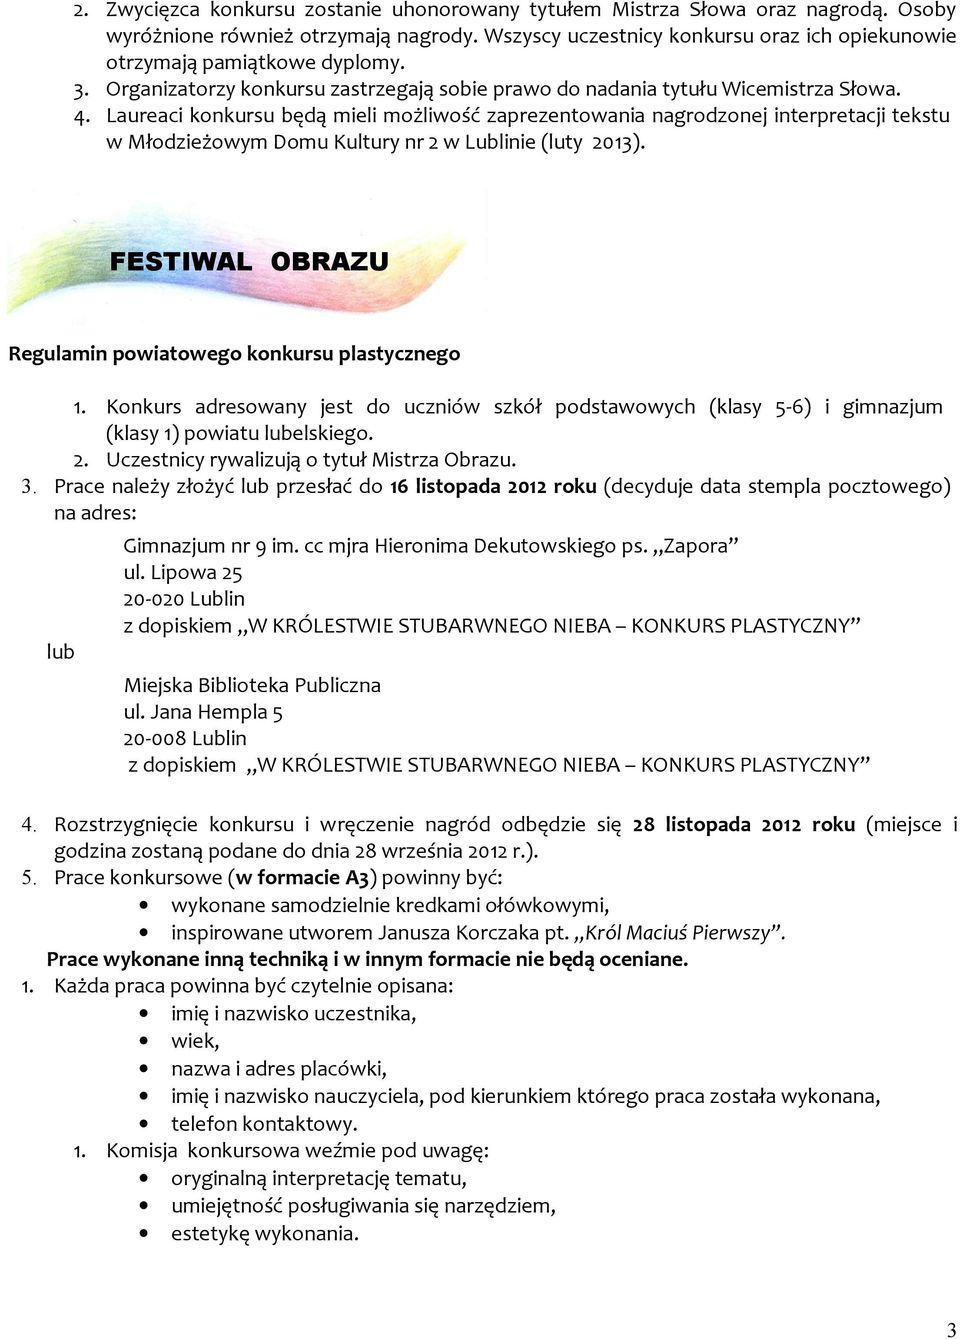 Laureaci konkursu będą mieli możliwość zaprezentowania nagrodzonej interpretacji tekstu w Młodzieżowym Domu Kultury nr 2 w Lublinie (luty 2013).